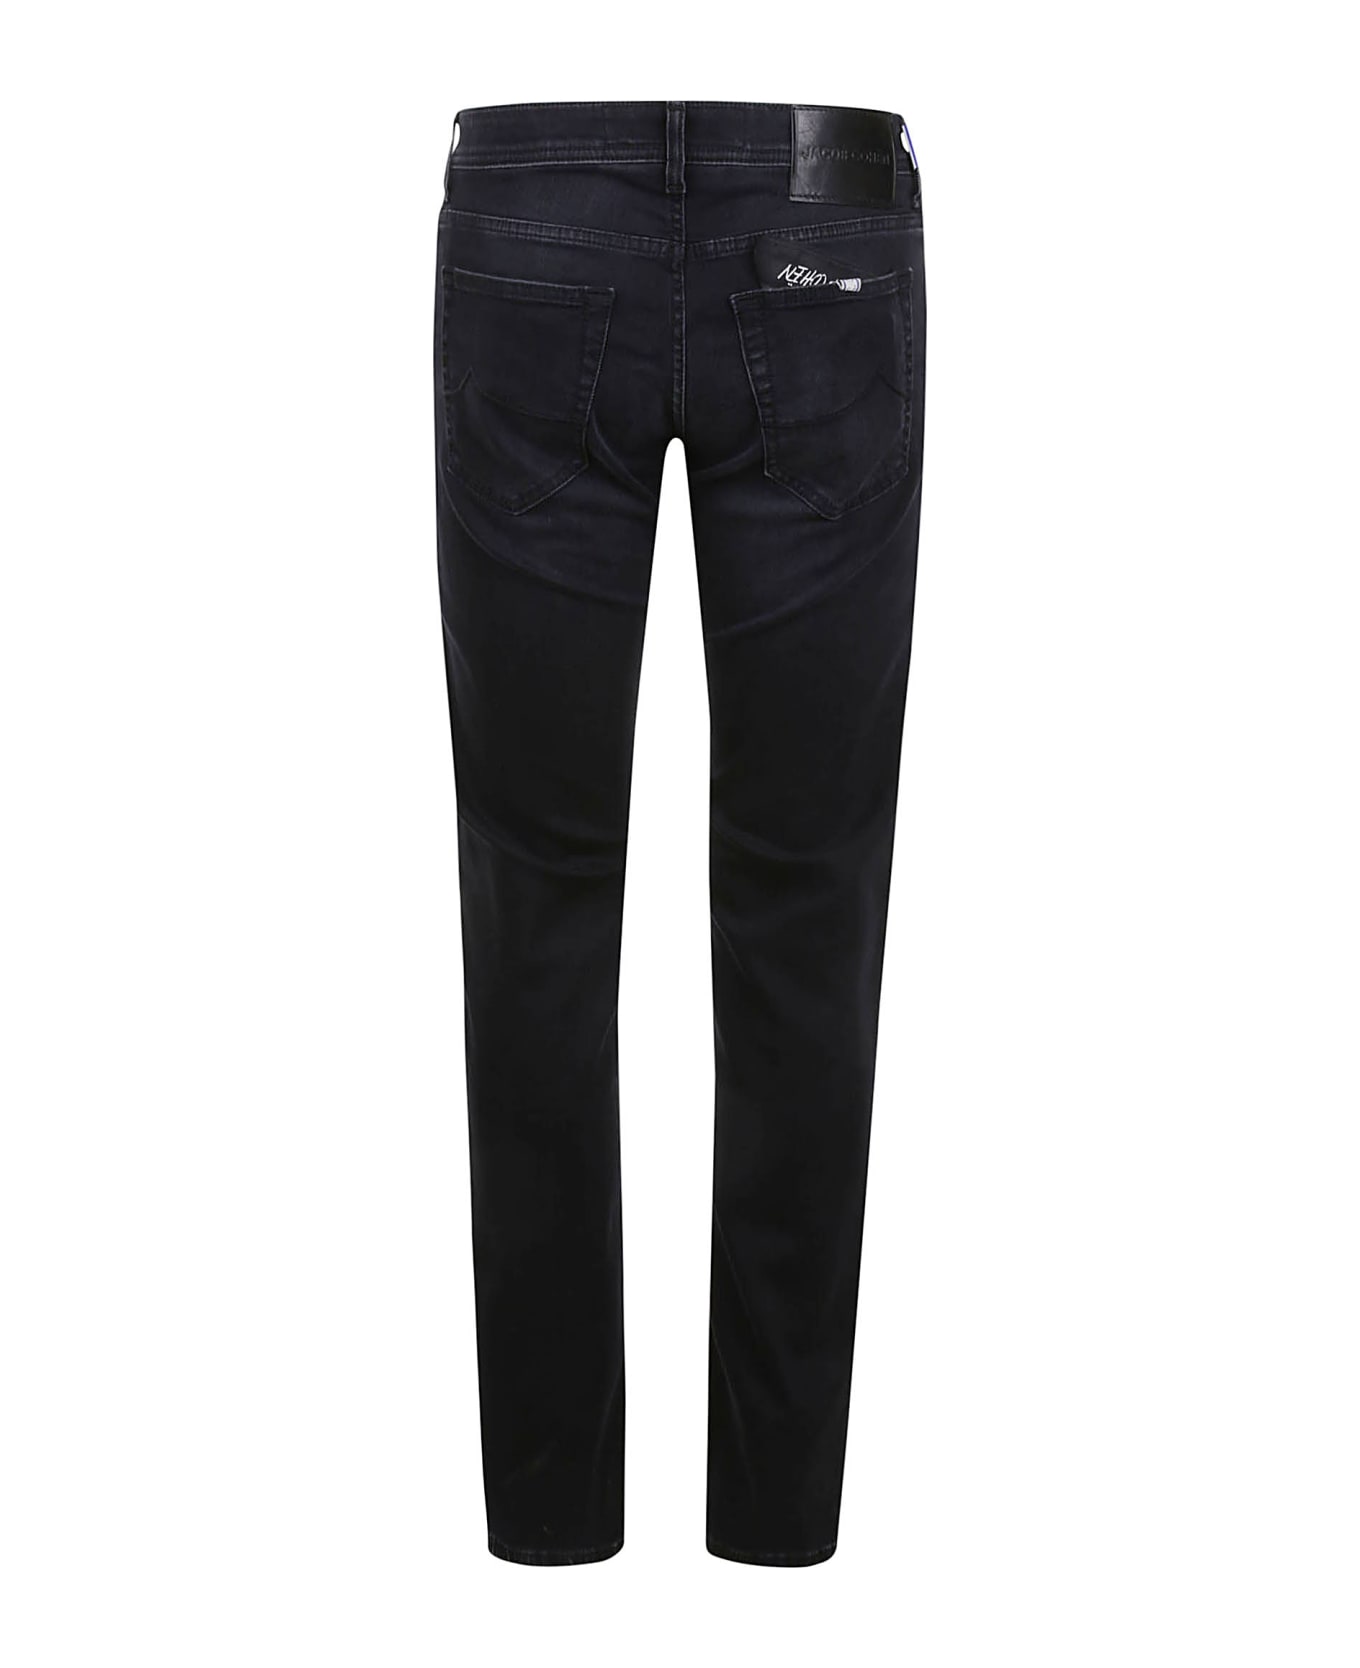 Jacob Cohen Nick Slim Fit Jeans - Black